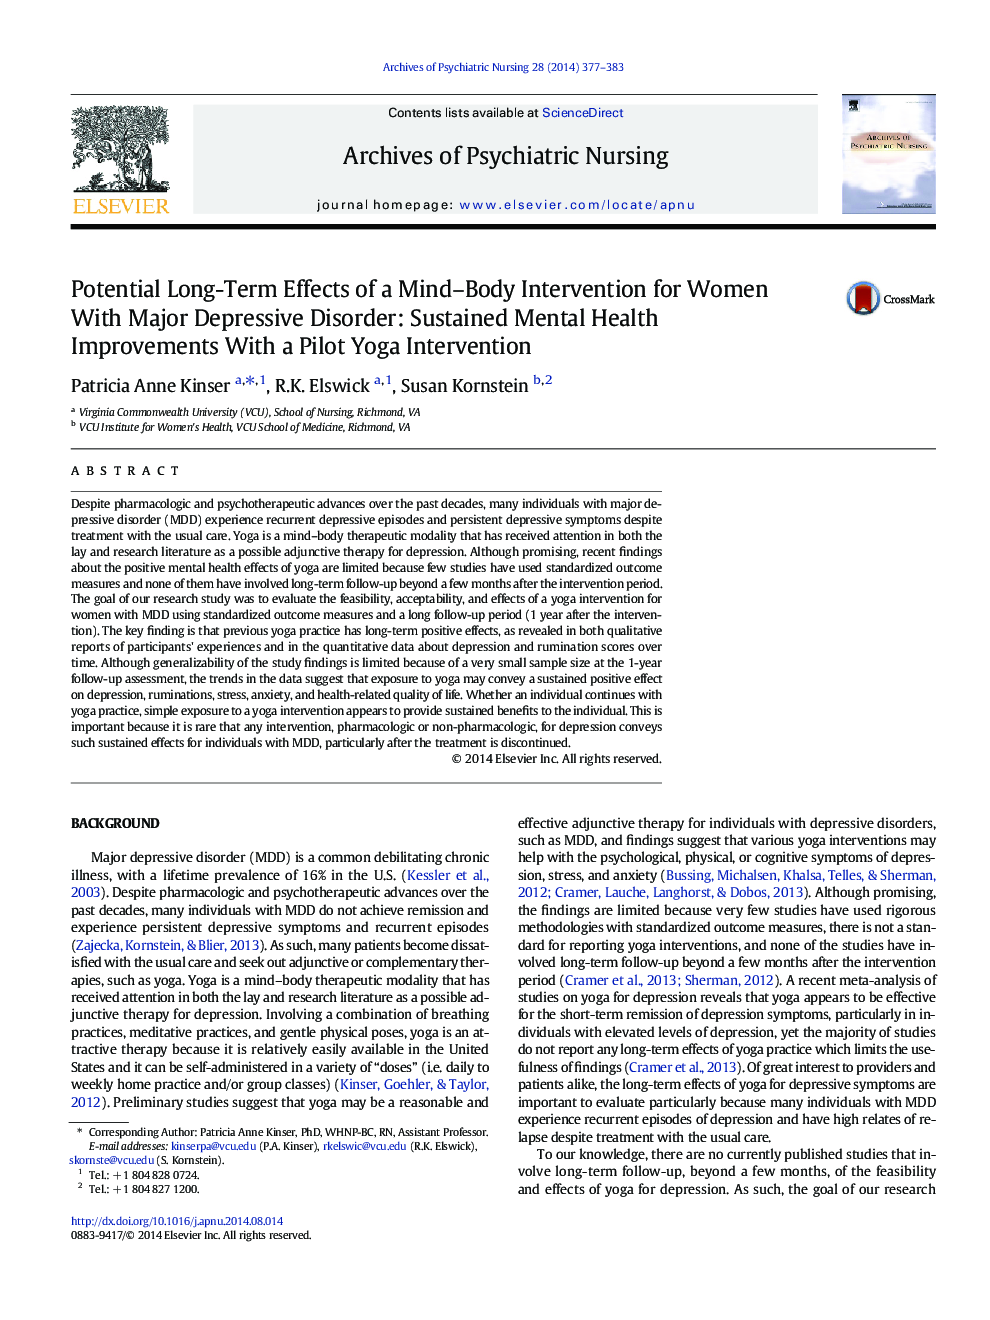 تأثیرات بلندمدت مداخلات ذهنی و جسمی برای زنان مبتلا به اختلال افسردگی عمده: بهبود مستمر سلامت روان با مداخله آزمایشی یوگا 